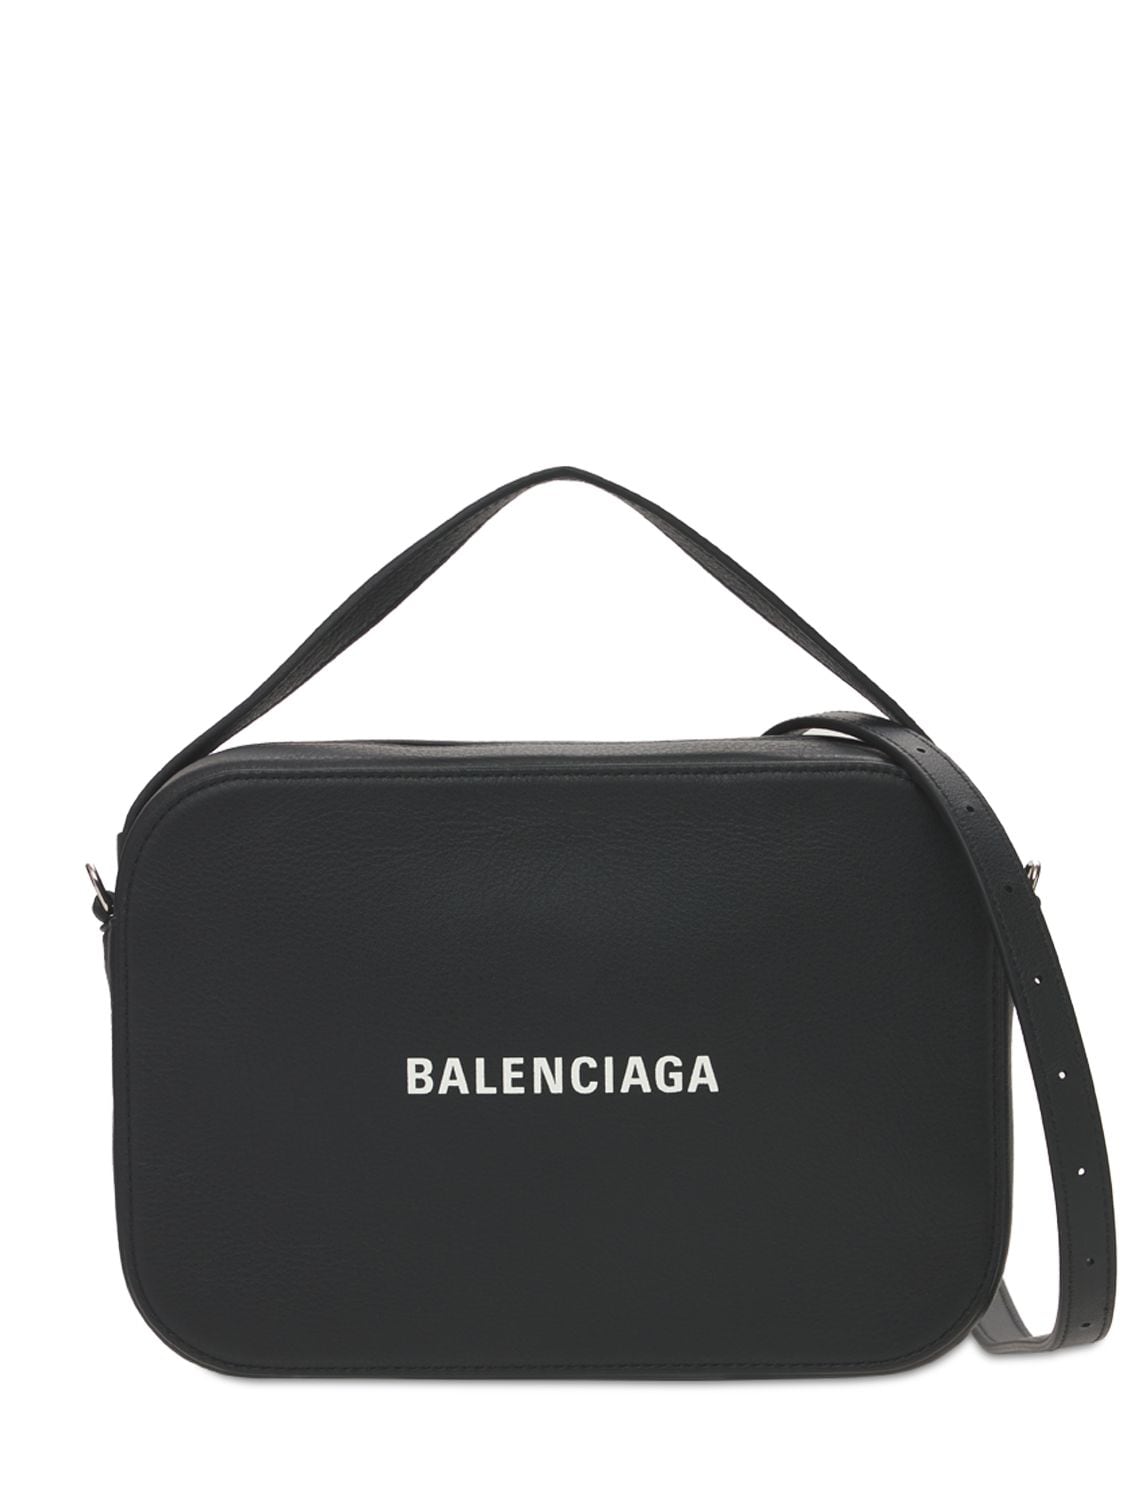 Balenciaga White Graffiti Leather Everyday Crossbody Bag Balenciaga